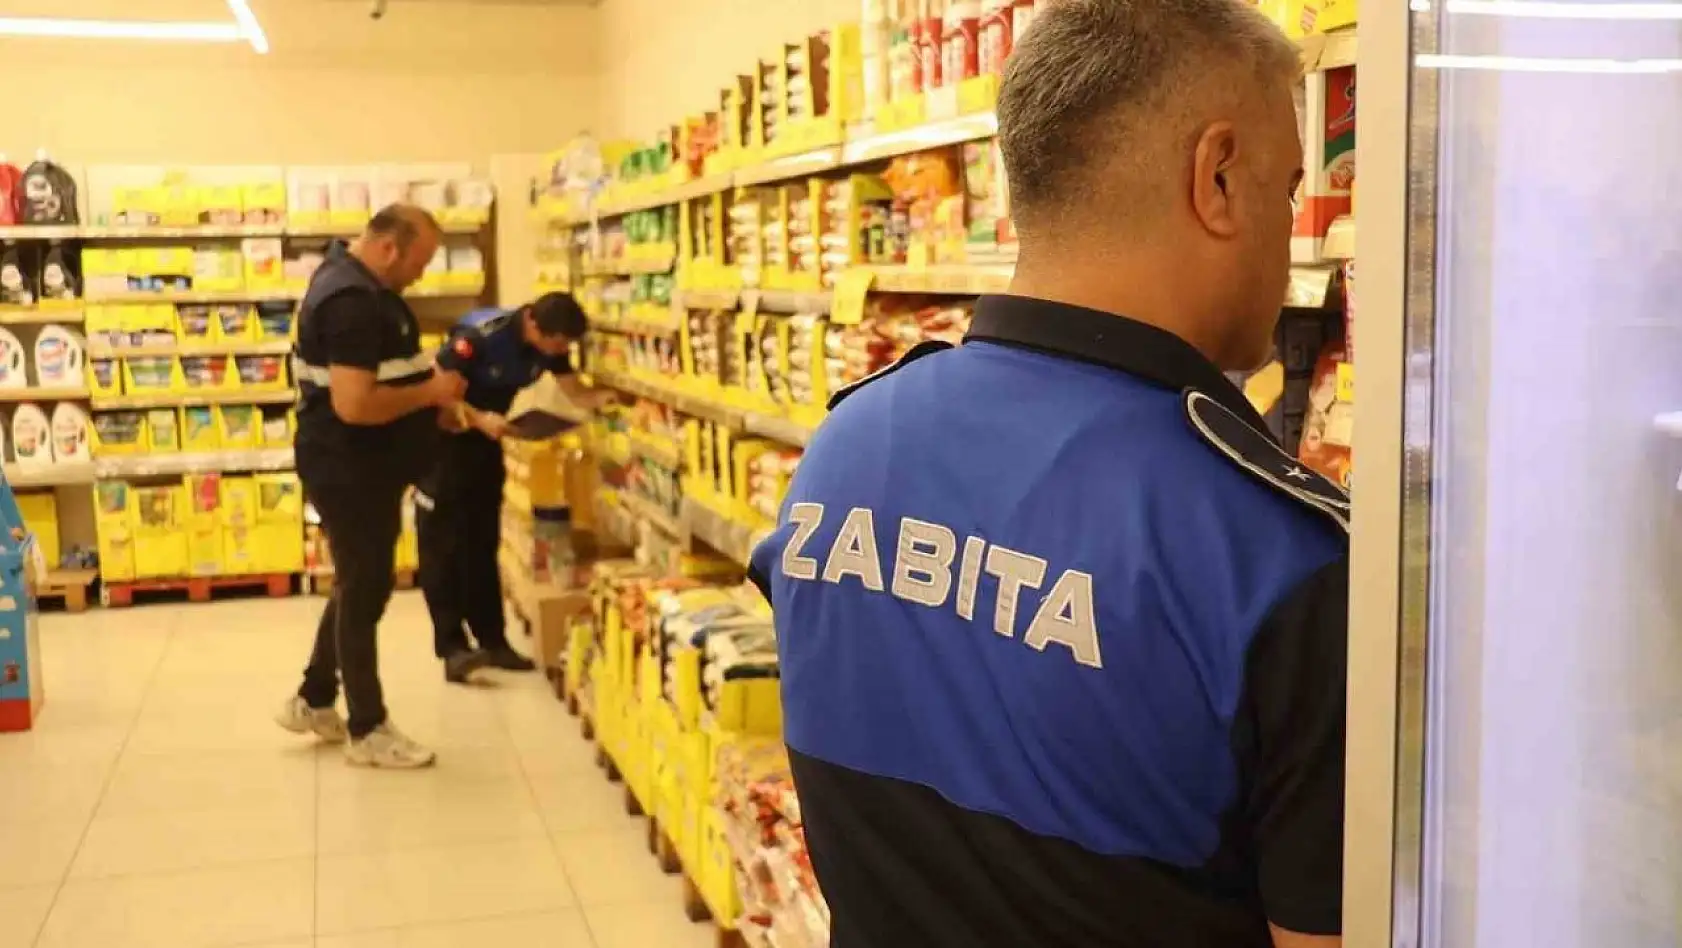 Koçarlı Belediyesi zabıta ekipleri market denetimi gerçekleştirdi